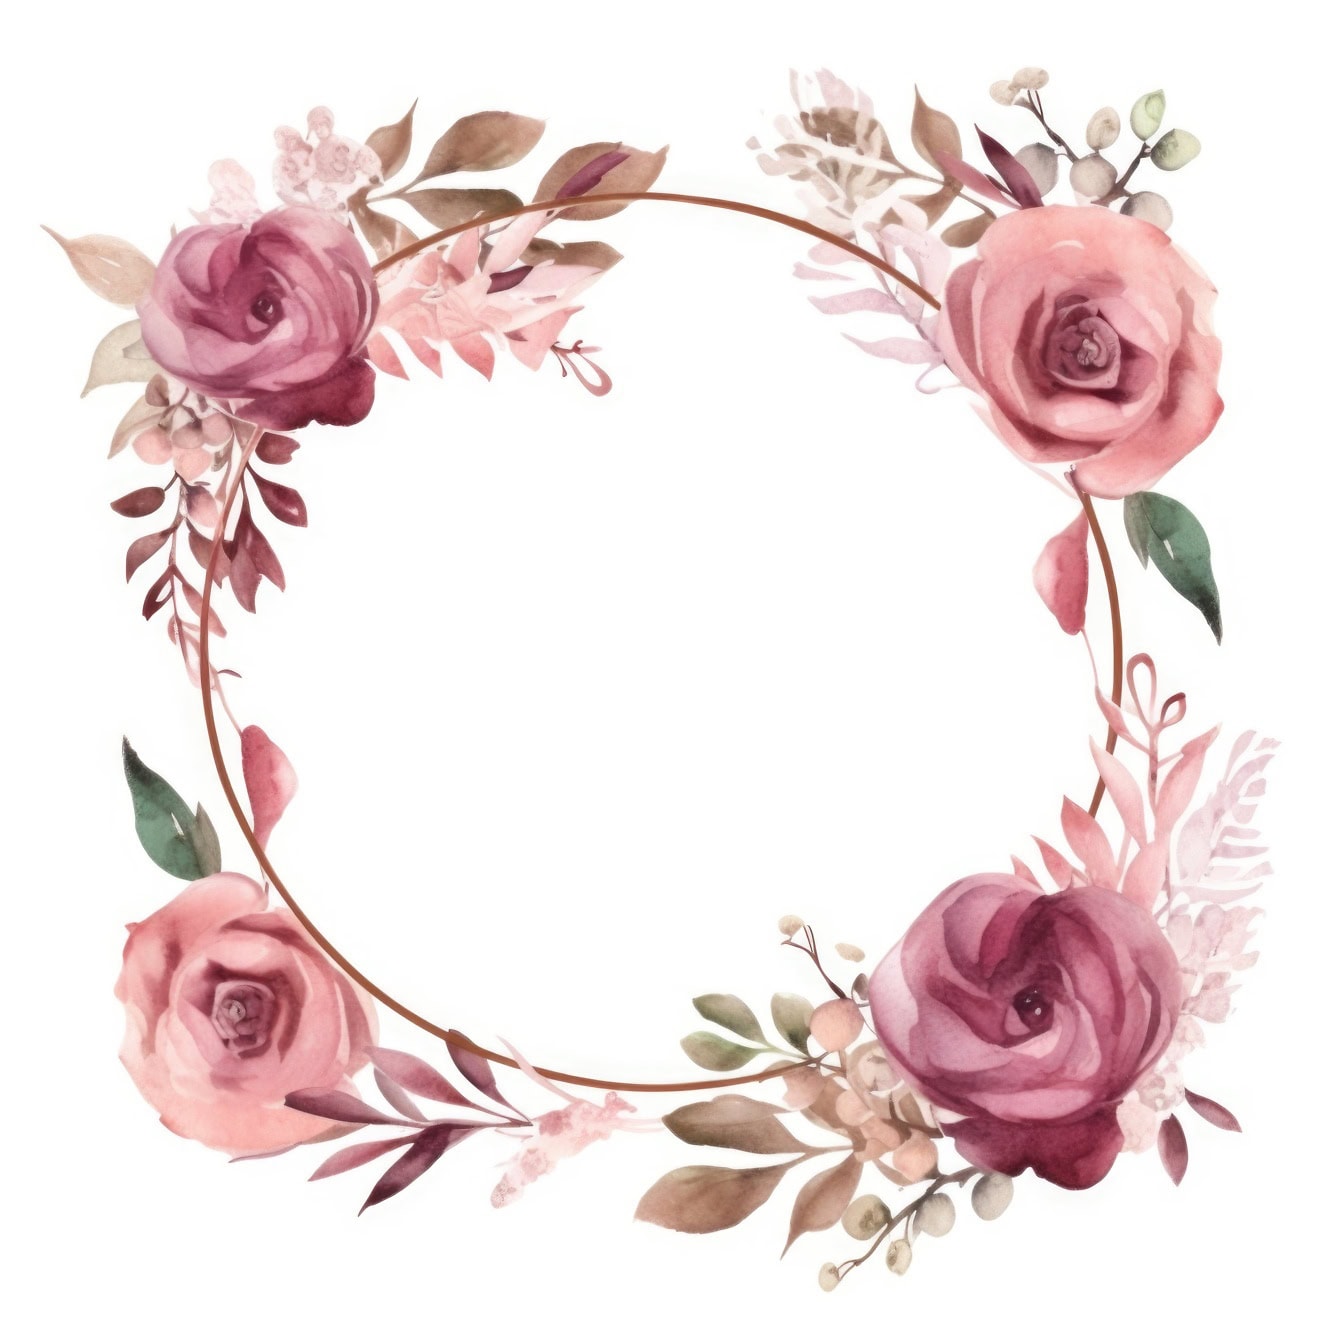 Акварельная роспись венка из пастельно-розовых цветов розы и листьев